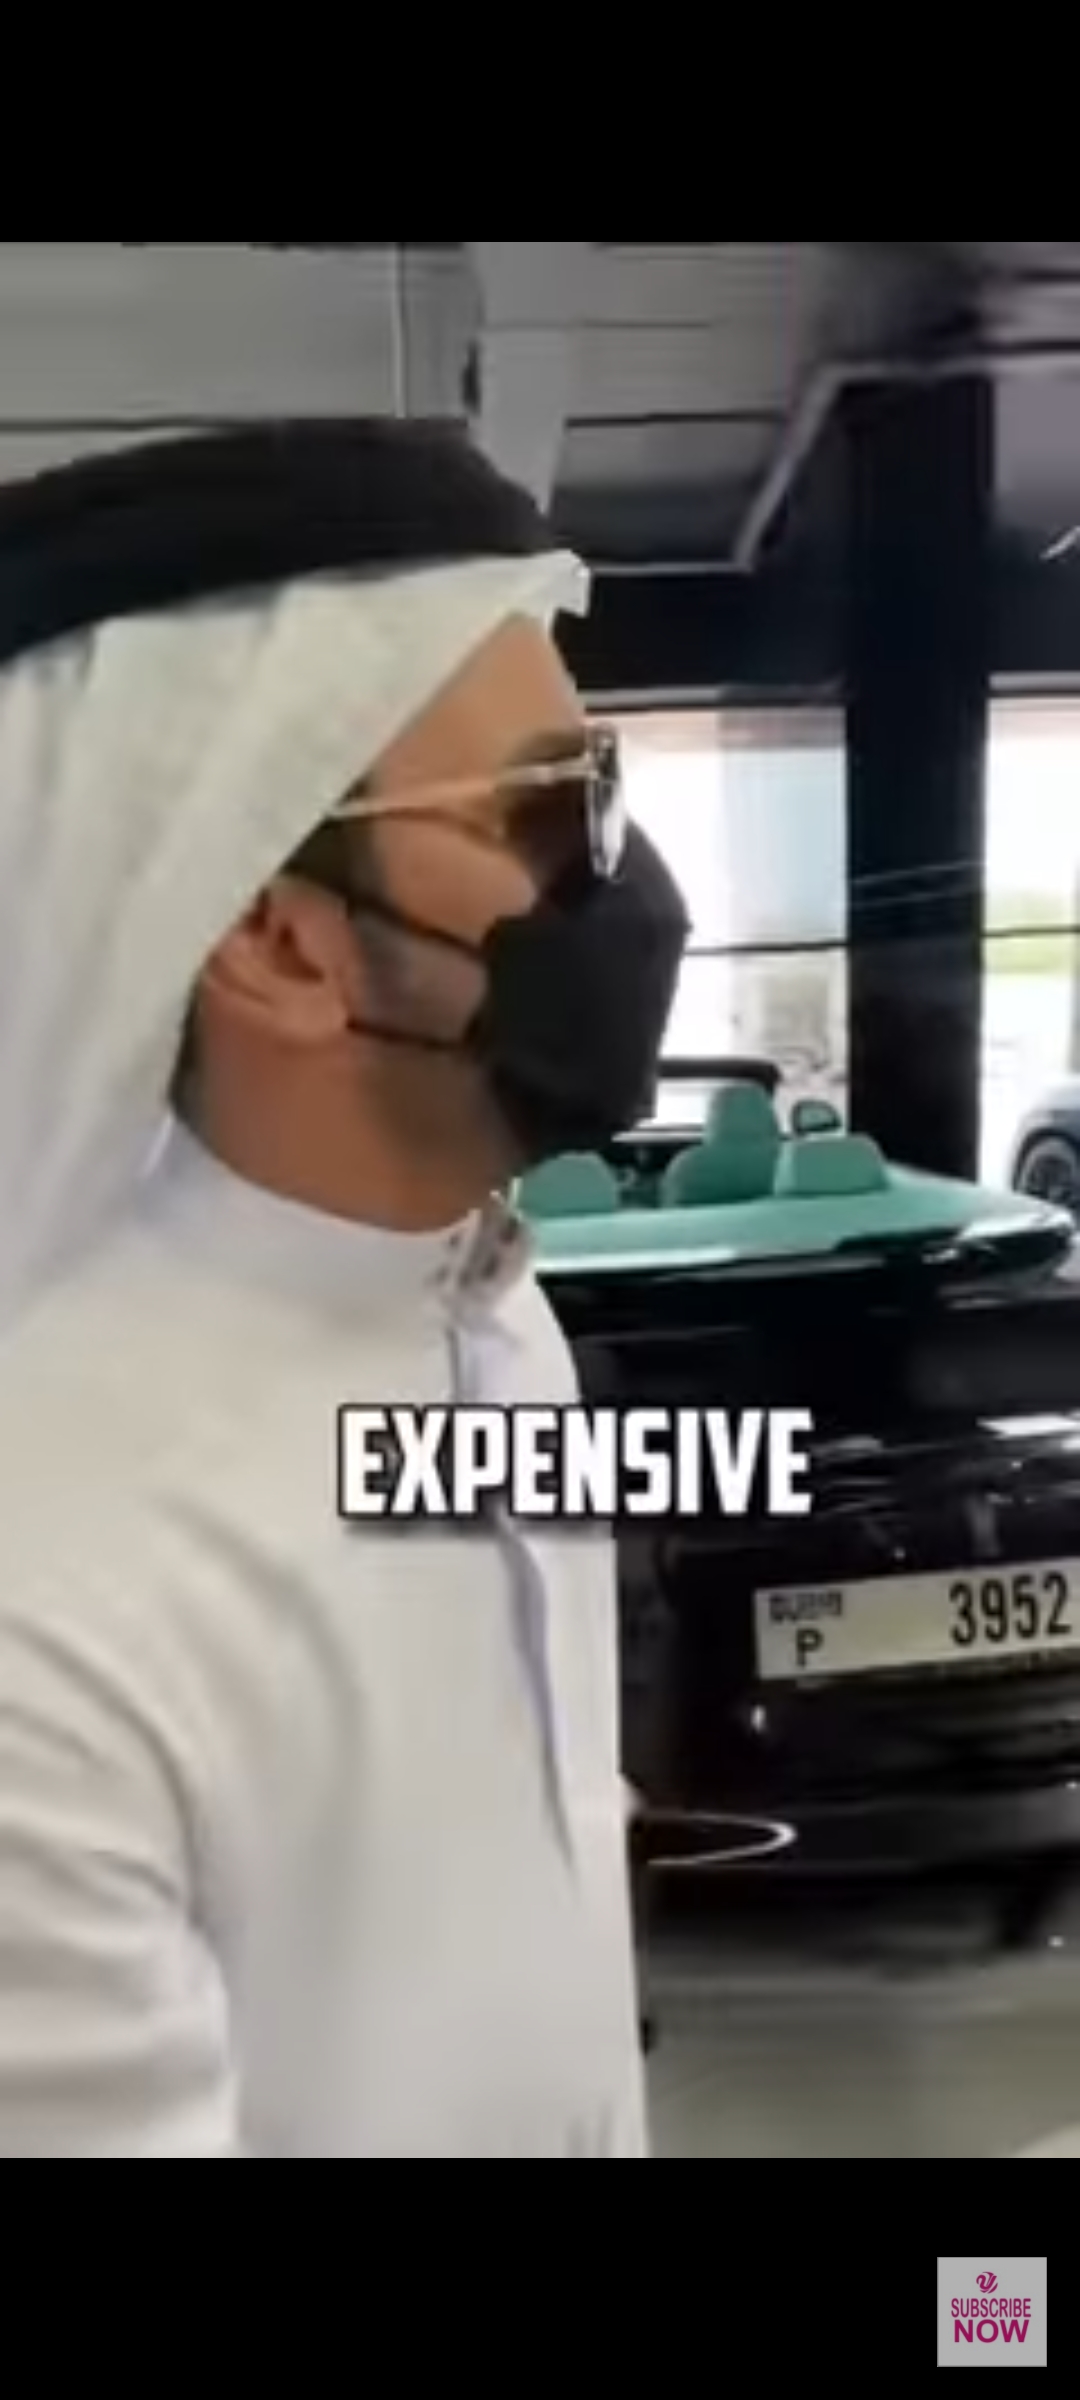 UAE Orders Arrest Of Man Over ‘Arrogant Display Of Wealth’ In Viral IG Video 